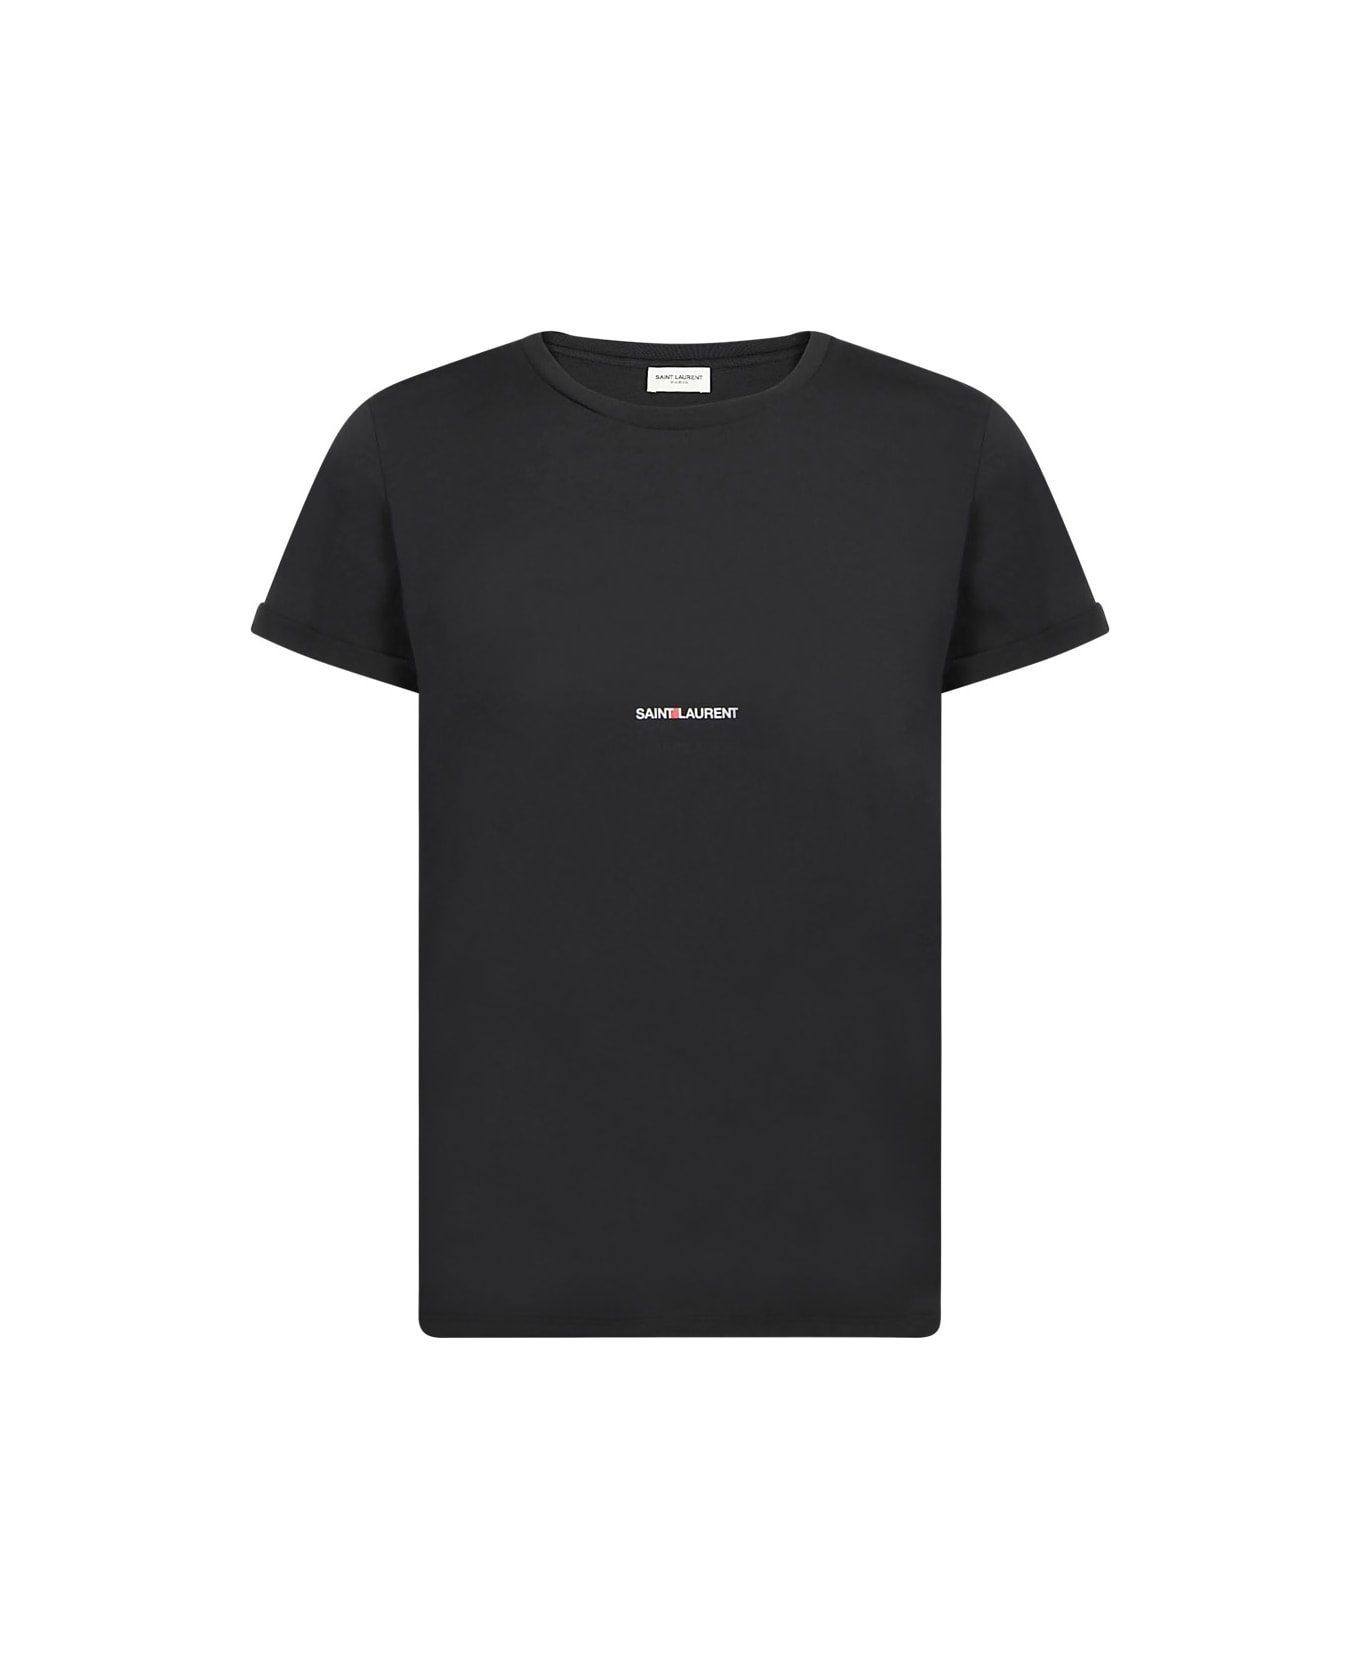 Saint Laurent Logo T-shirt - Black